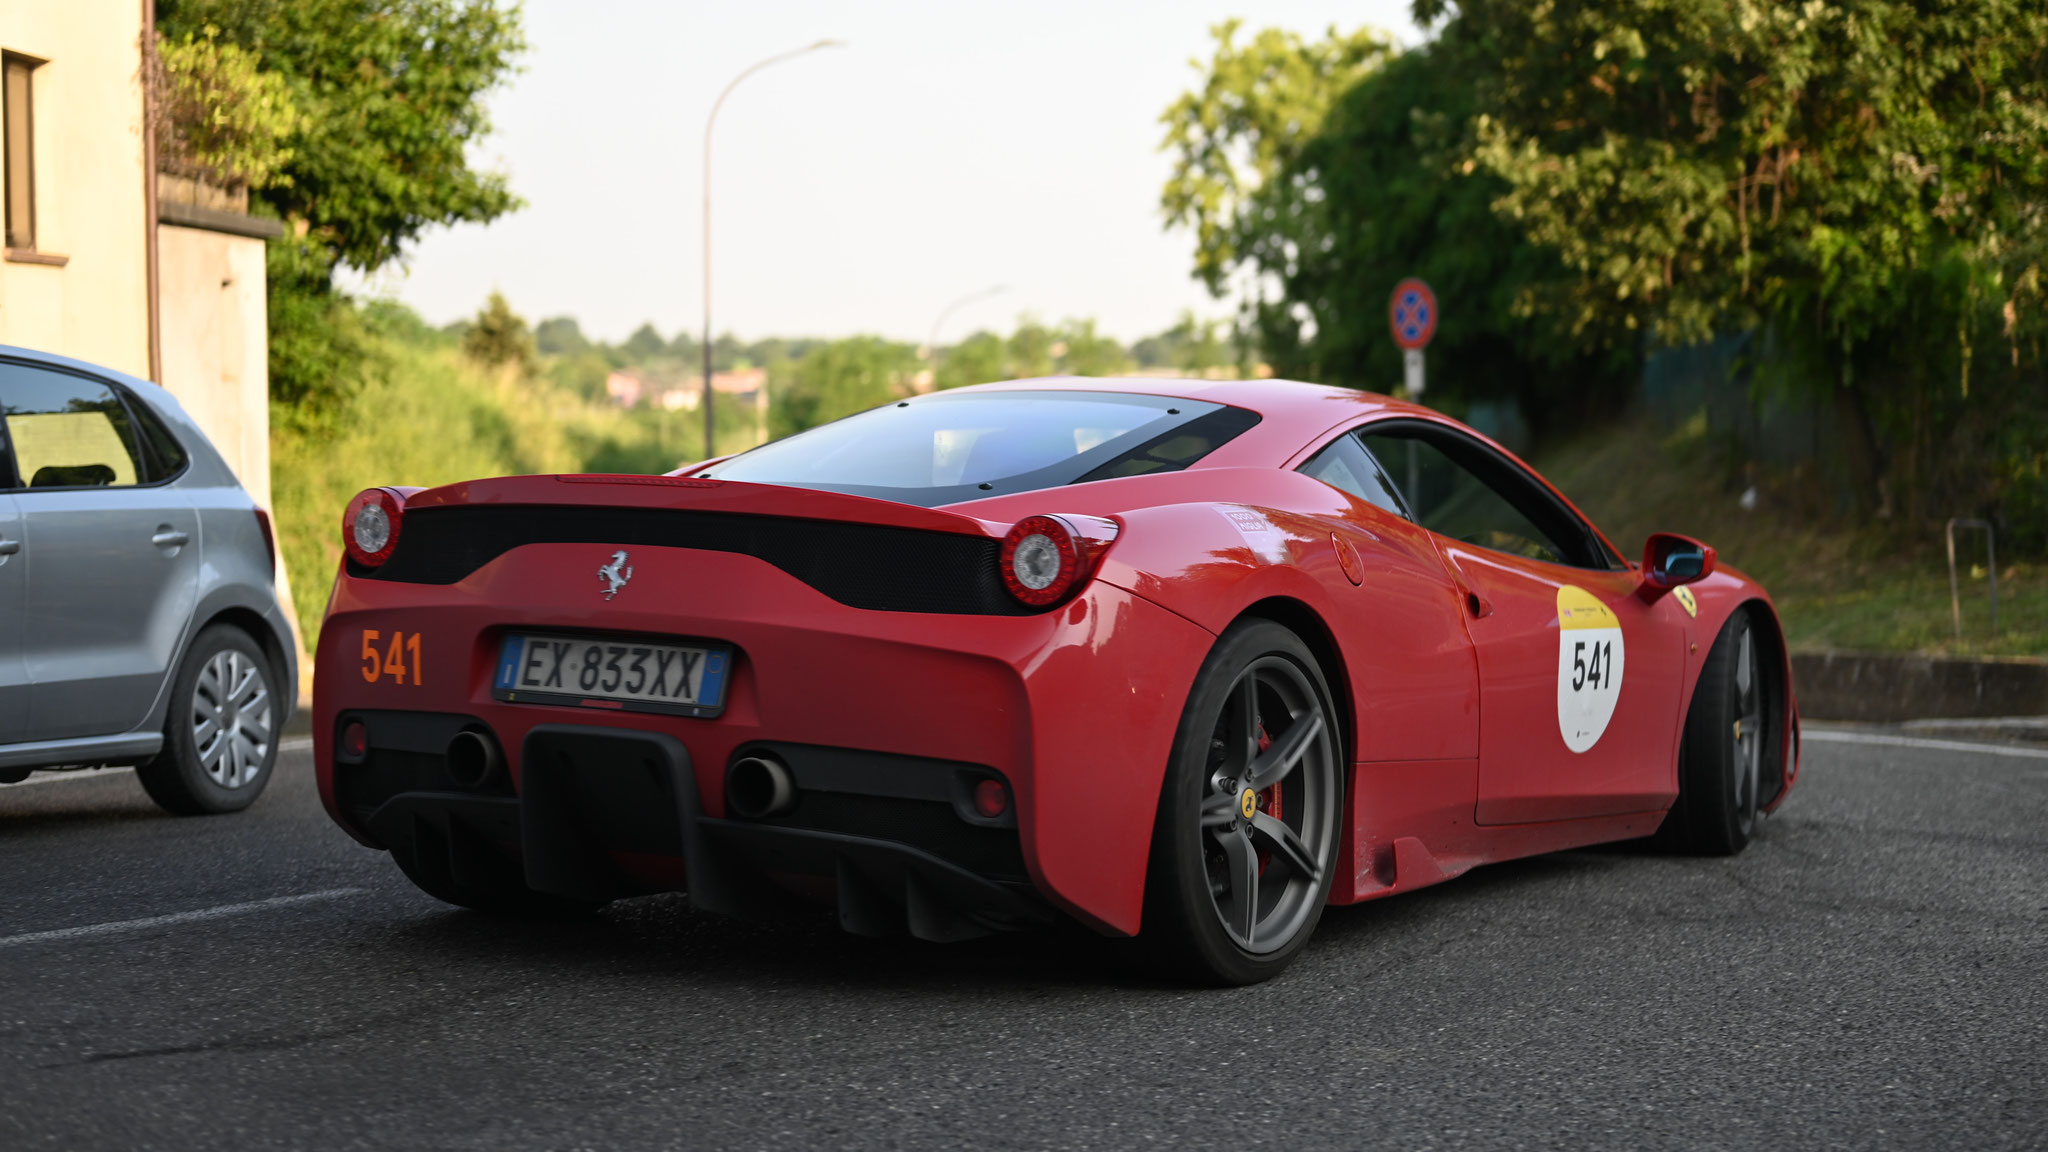 Ferrari 458 Speciale - EX833XX (ITA)